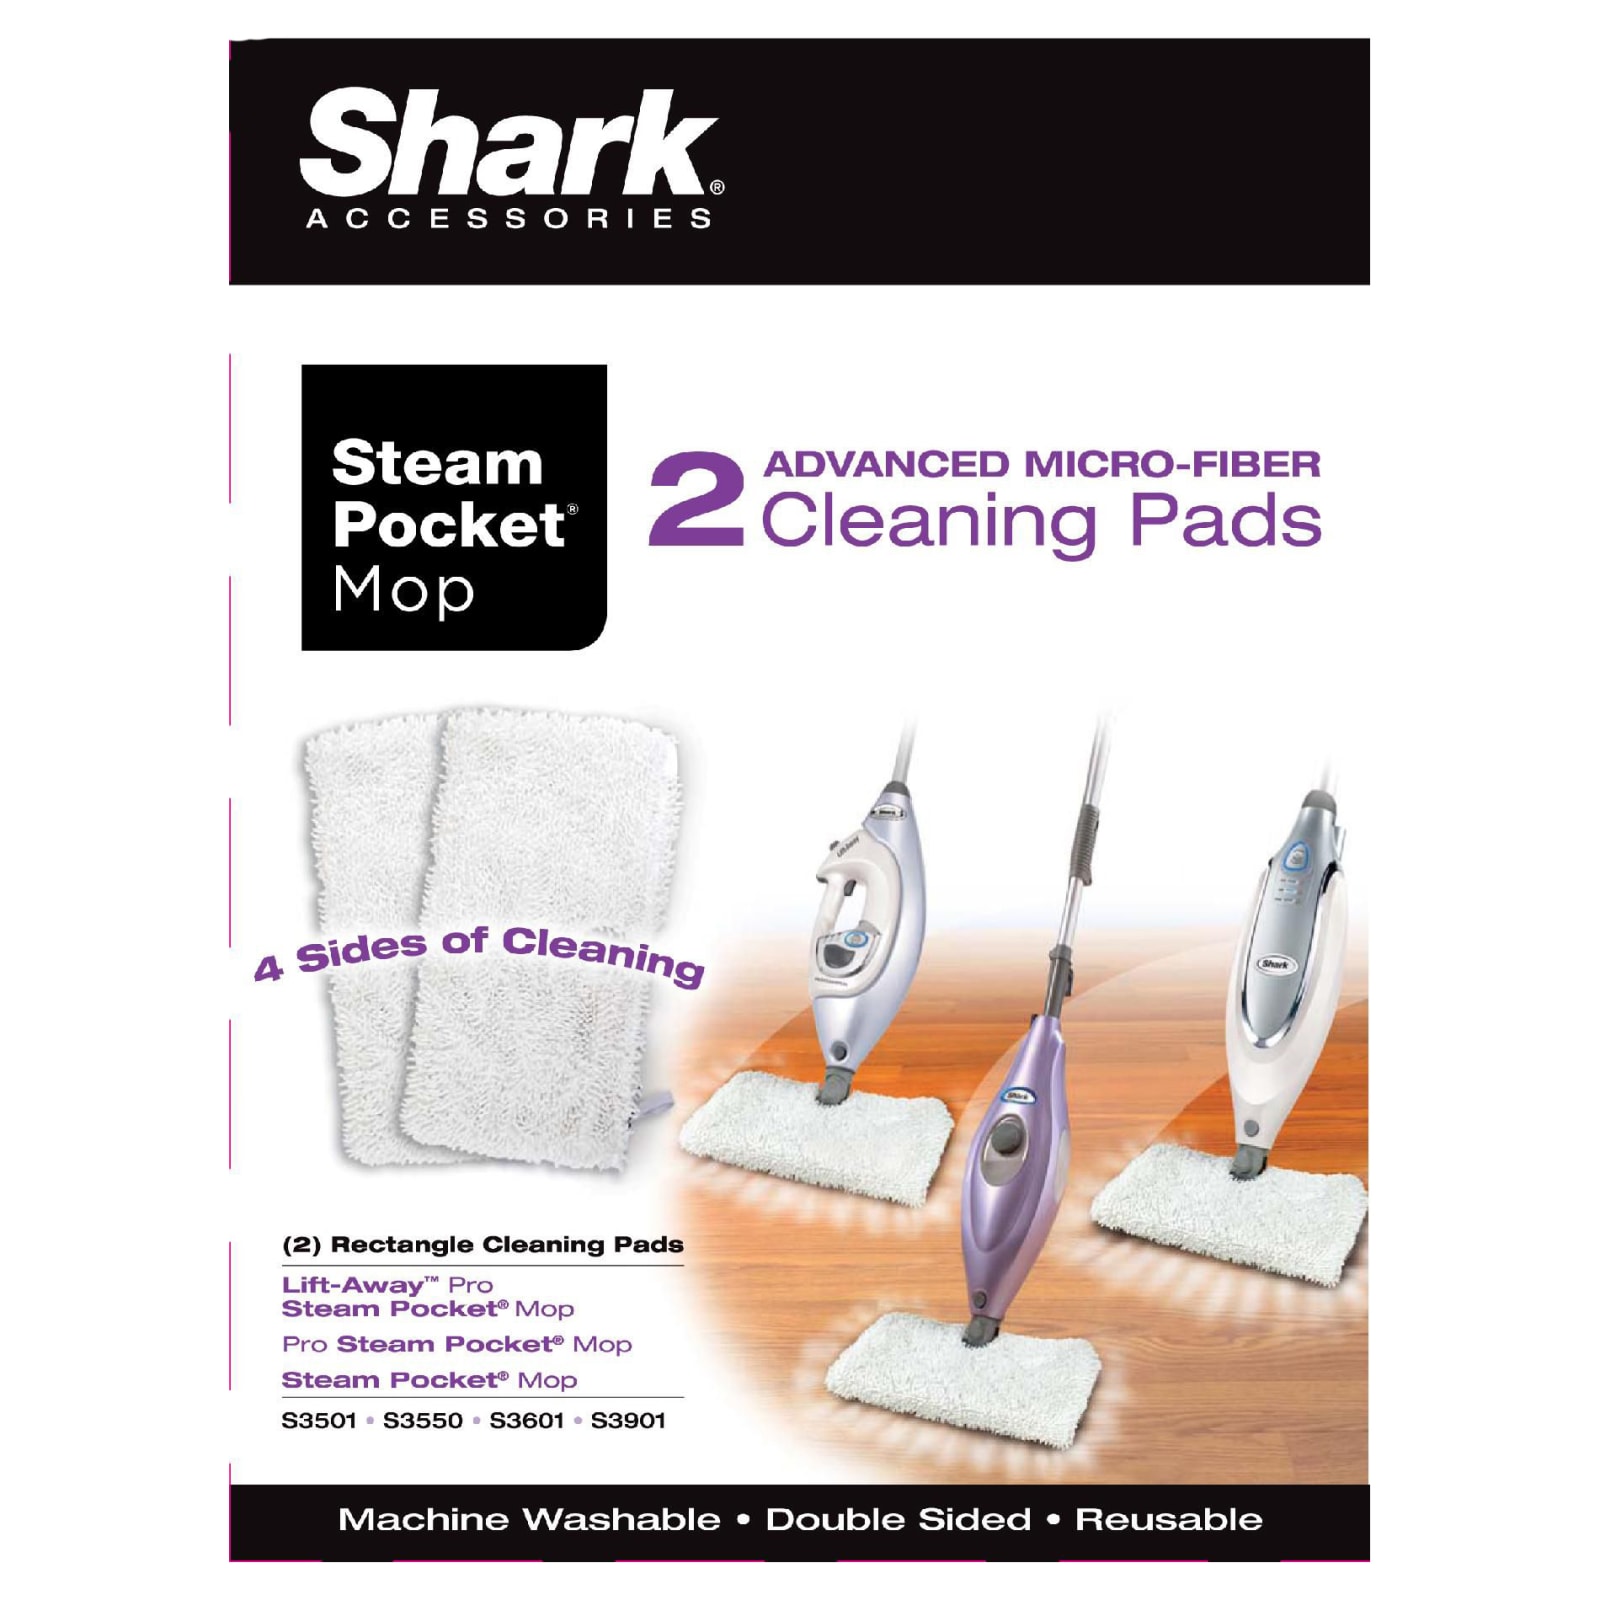 Shark Professional Steam Pocket Mop - S3601